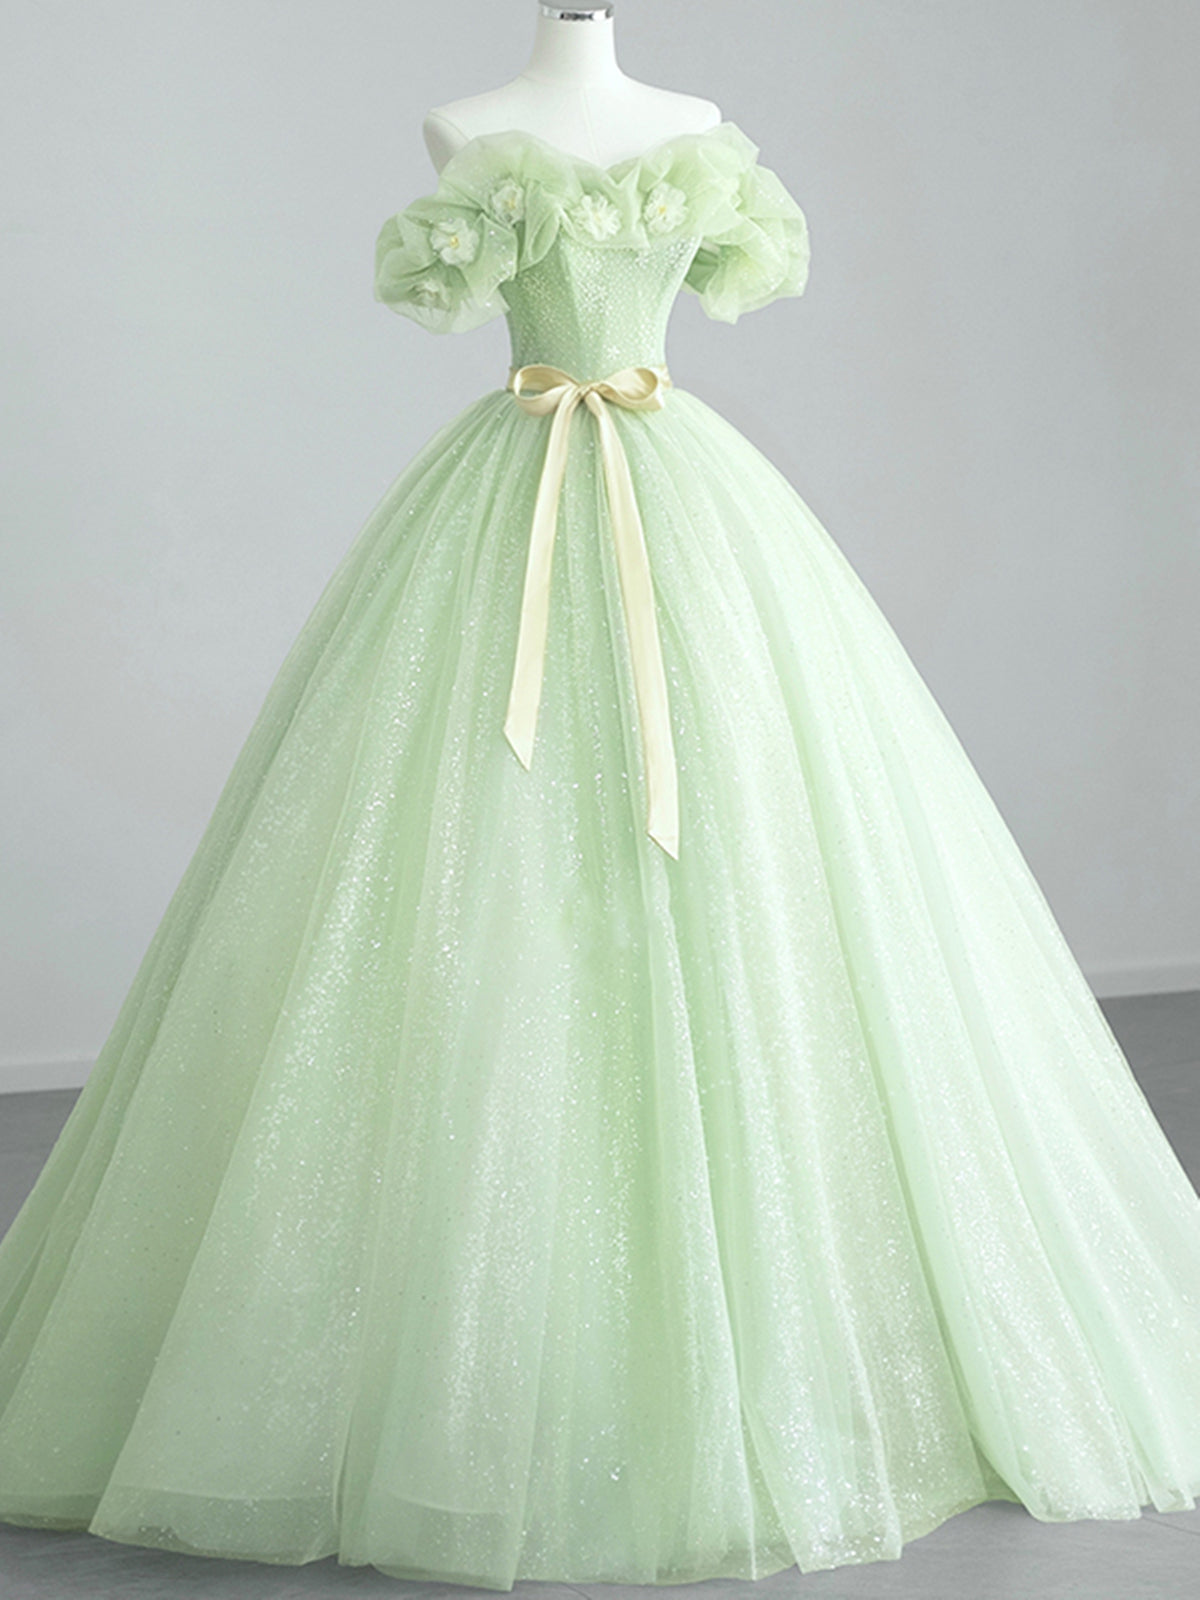 Off the Shoulder Light Green Floral Prom Dresses For Black girls For Women, Green Floral Formal Graduation Dress